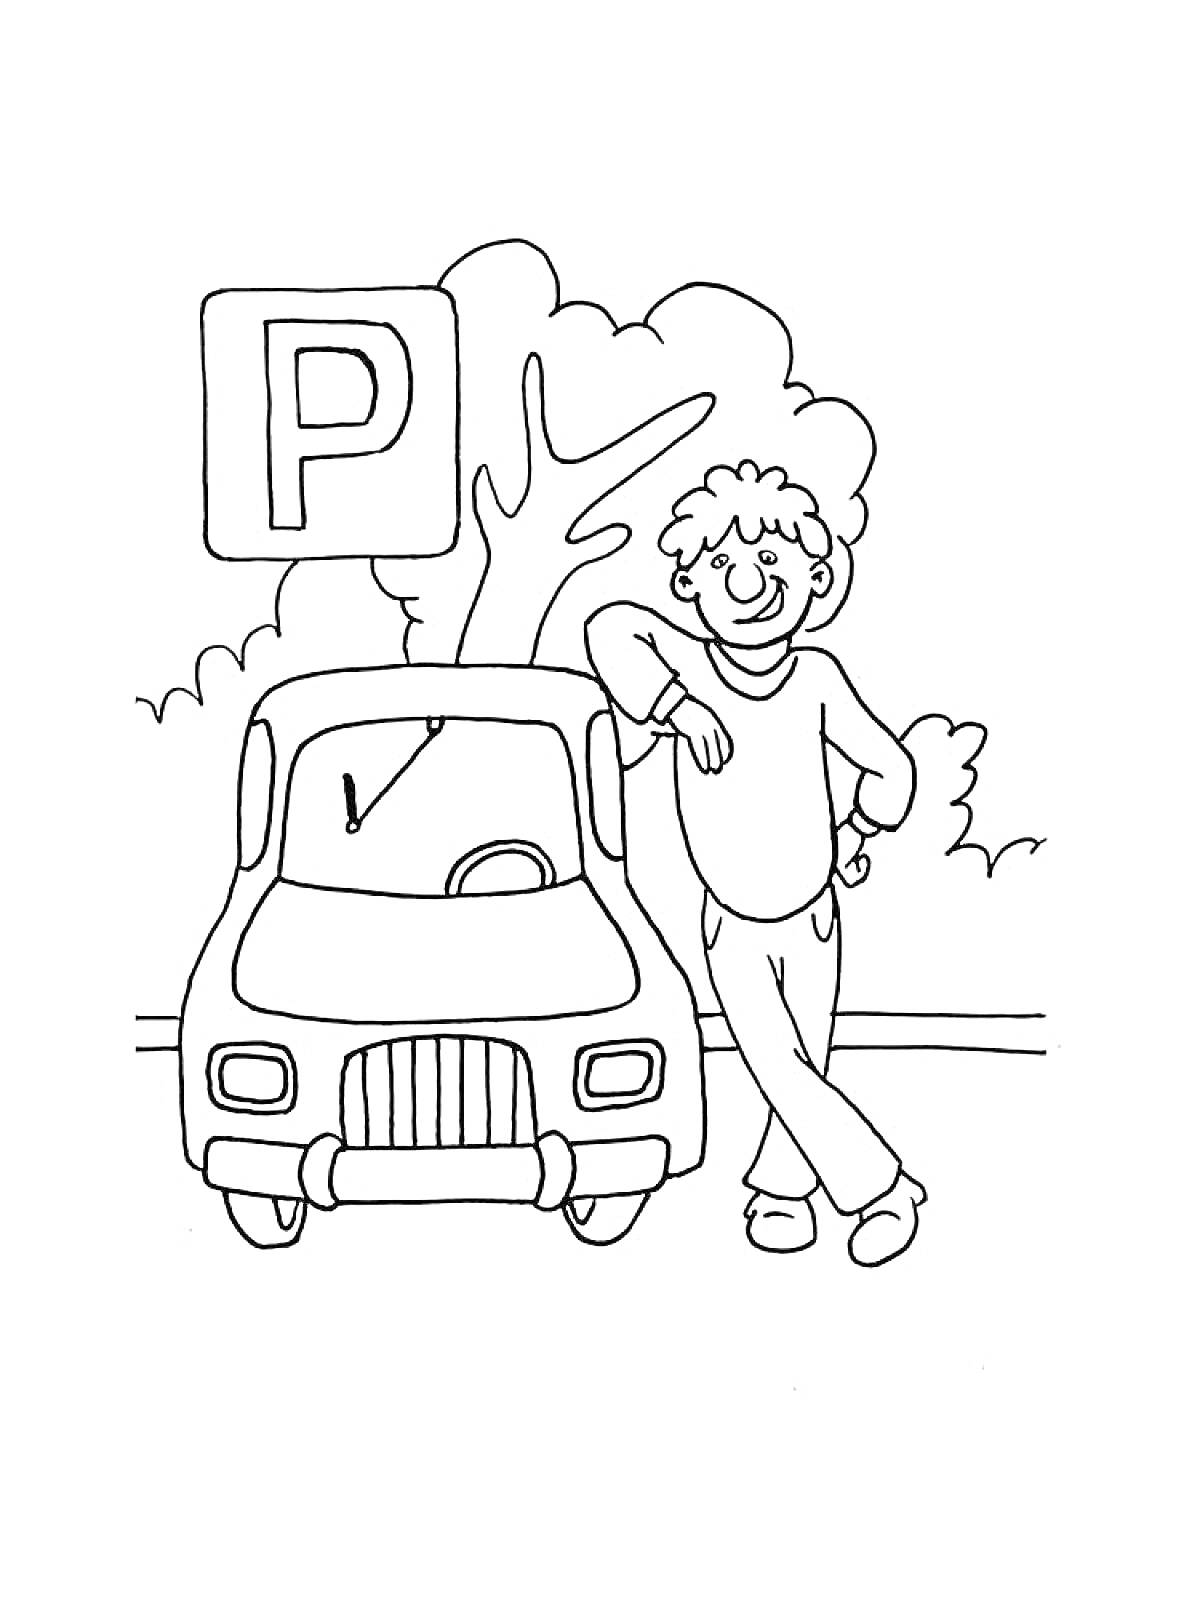 На раскраске изображено: Парковка, Мальчик, Знак, Деревья, ПДД, Правила дорожного движения, Авто, Транспорт, Машины